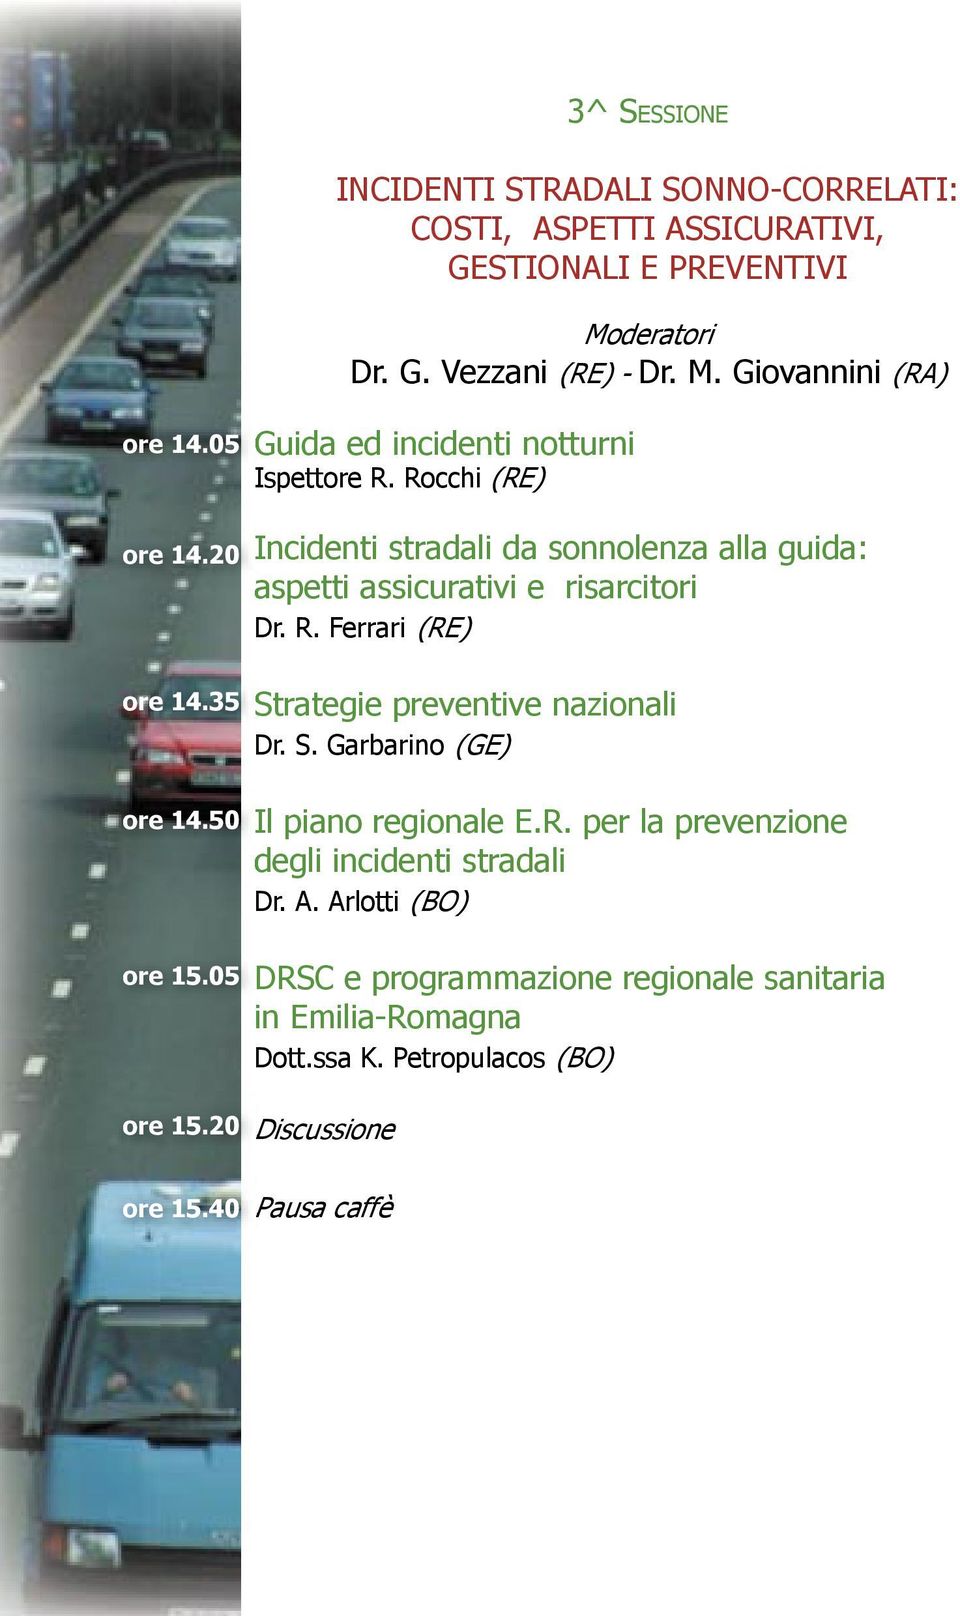 Rocchi (RE) Incidenti stradali da sonnolenza alla guida: aspetti assicurativi e risarcitori Dr. R. Ferrari (RE) Strategie preventive nazionali Dr. S. Garbarino (GE) Il piano regionale E.